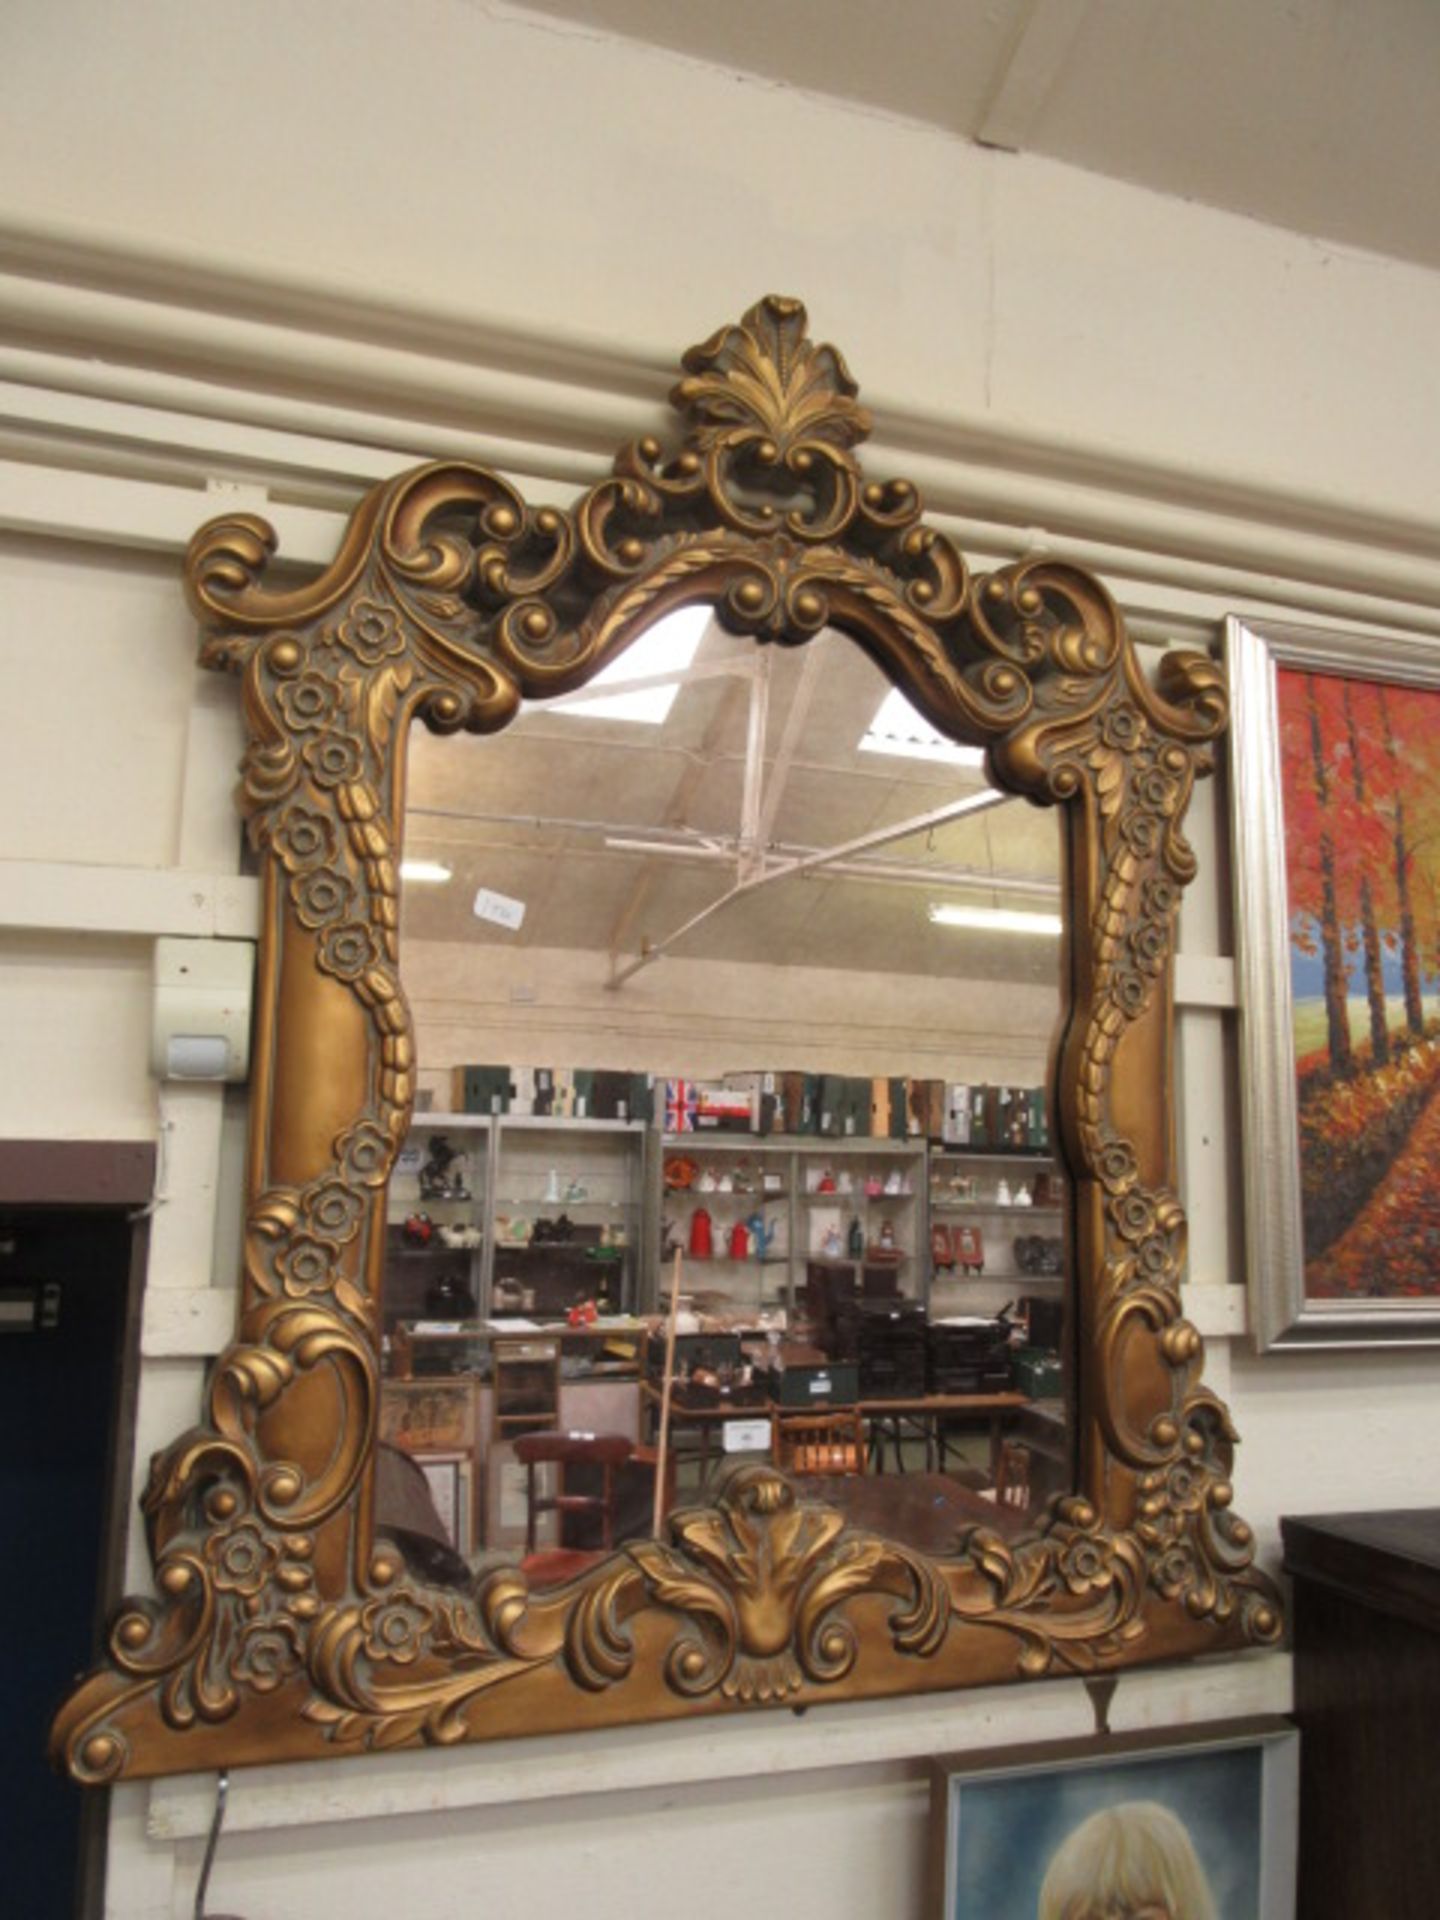 A modern ornate framed over mantle mirror